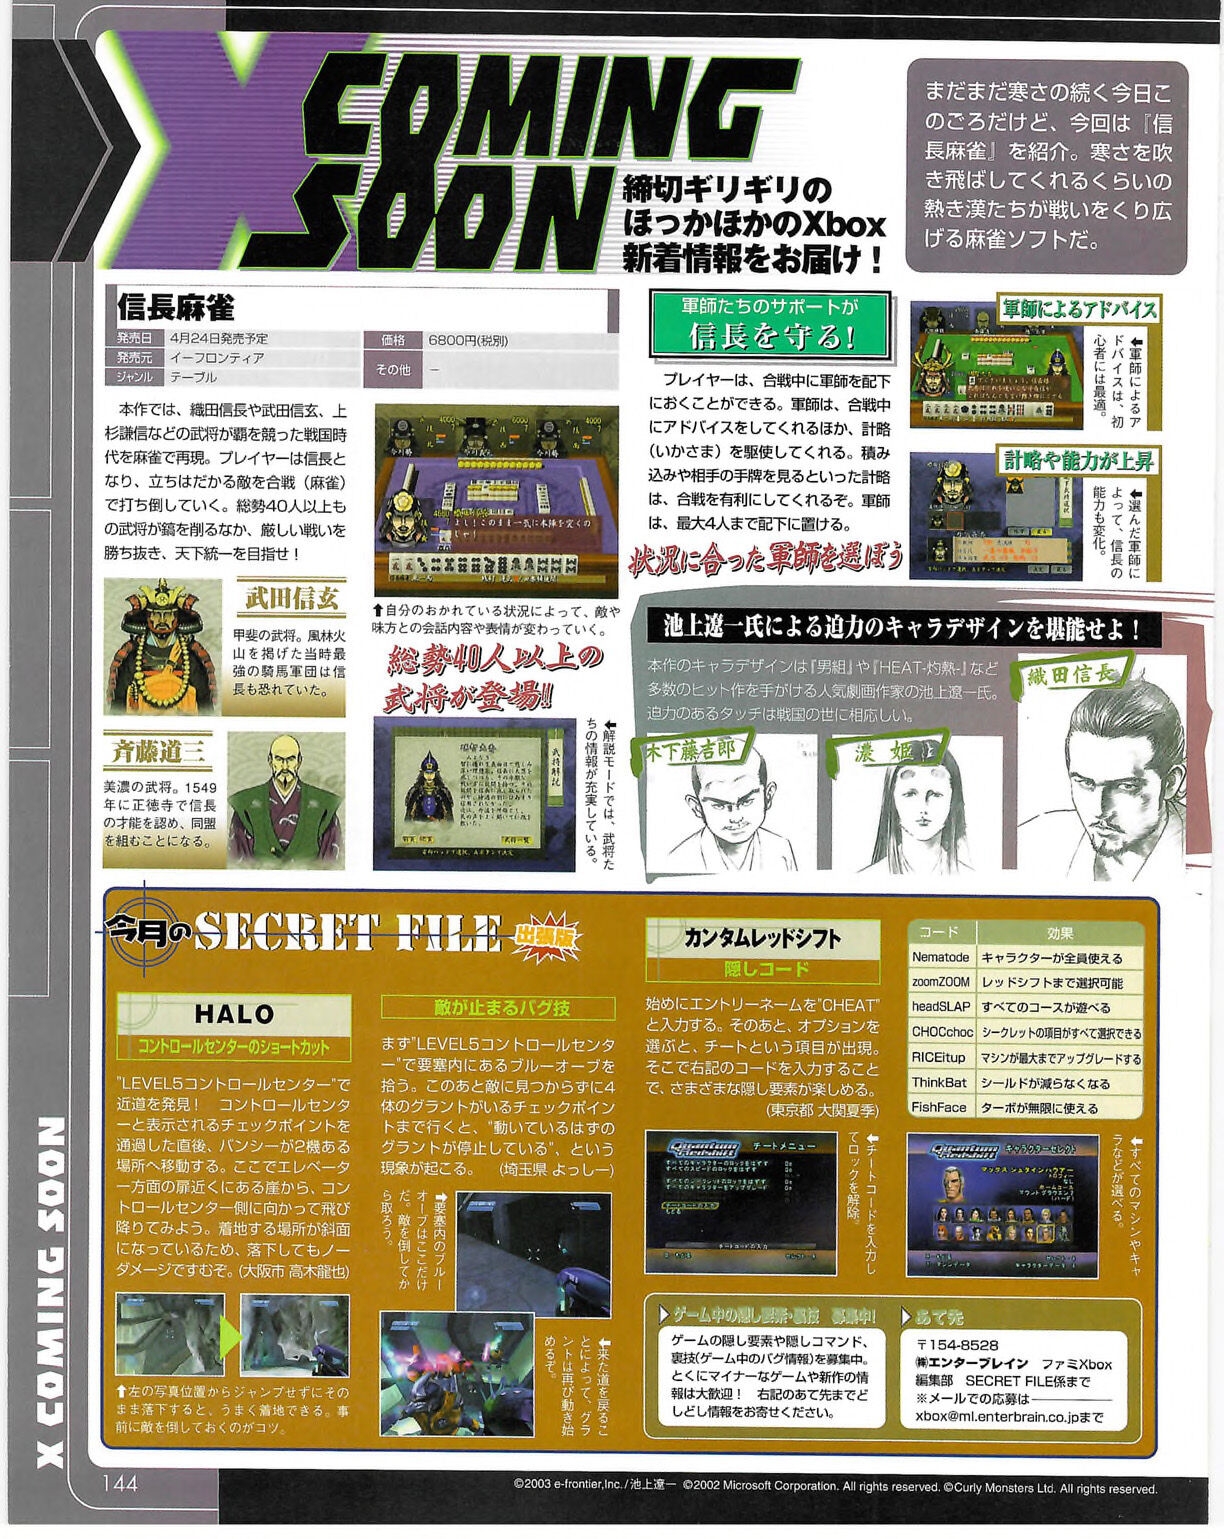 Famitsu_Xbox_2003-04_jp2 143